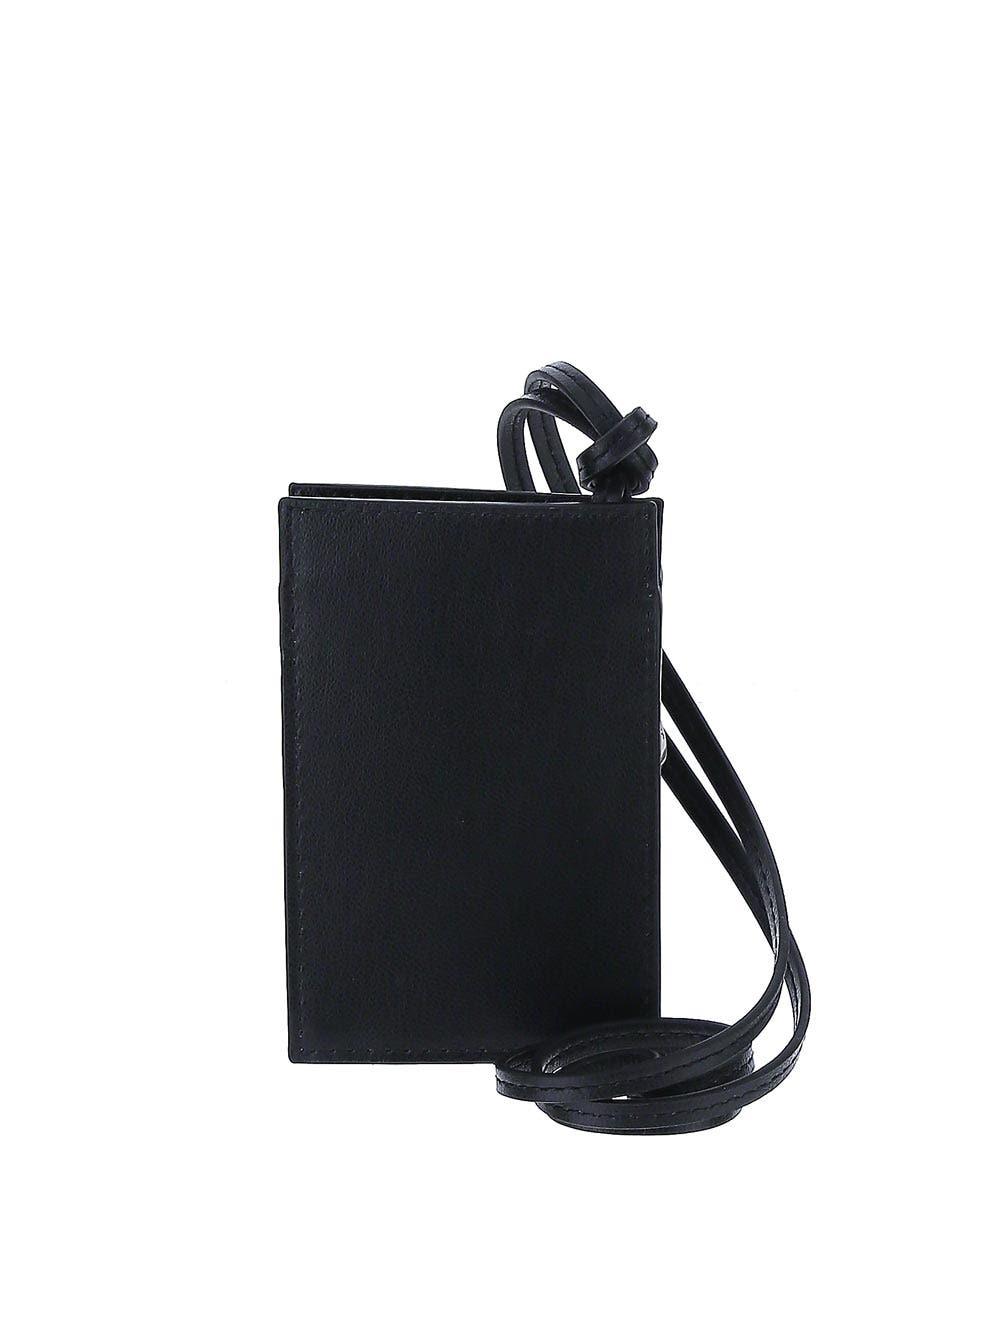 JACQUEMUS: Le Porte leather wallet with shoulder strap - Black